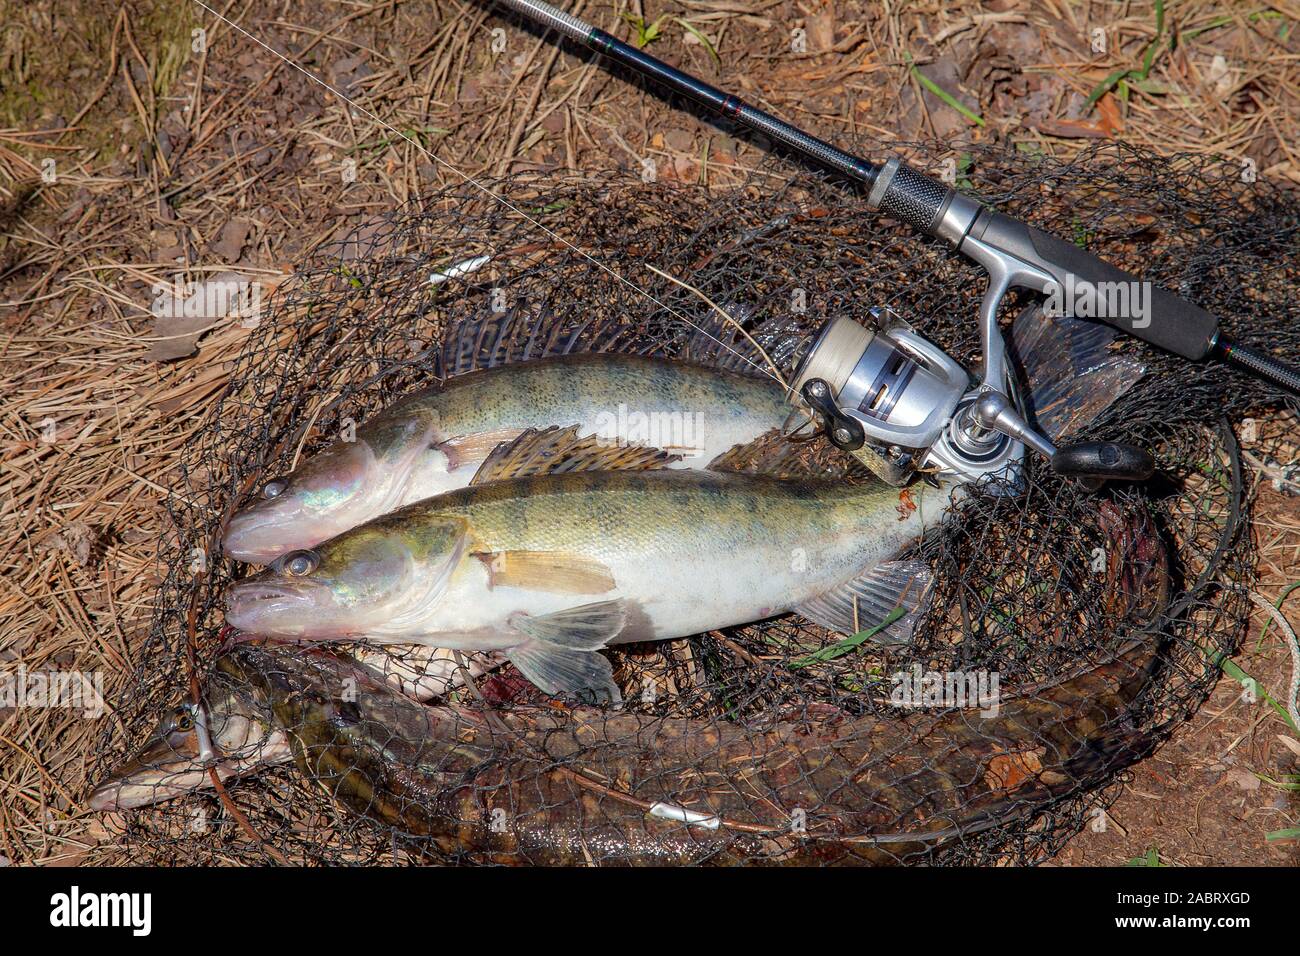 Concept de la pêche de capture, un trophée - deux gros poissons d'eau douce  sandre Sander lucioperca savent comme tout juste de prendre de l'eau et la  canne à pêche avec le